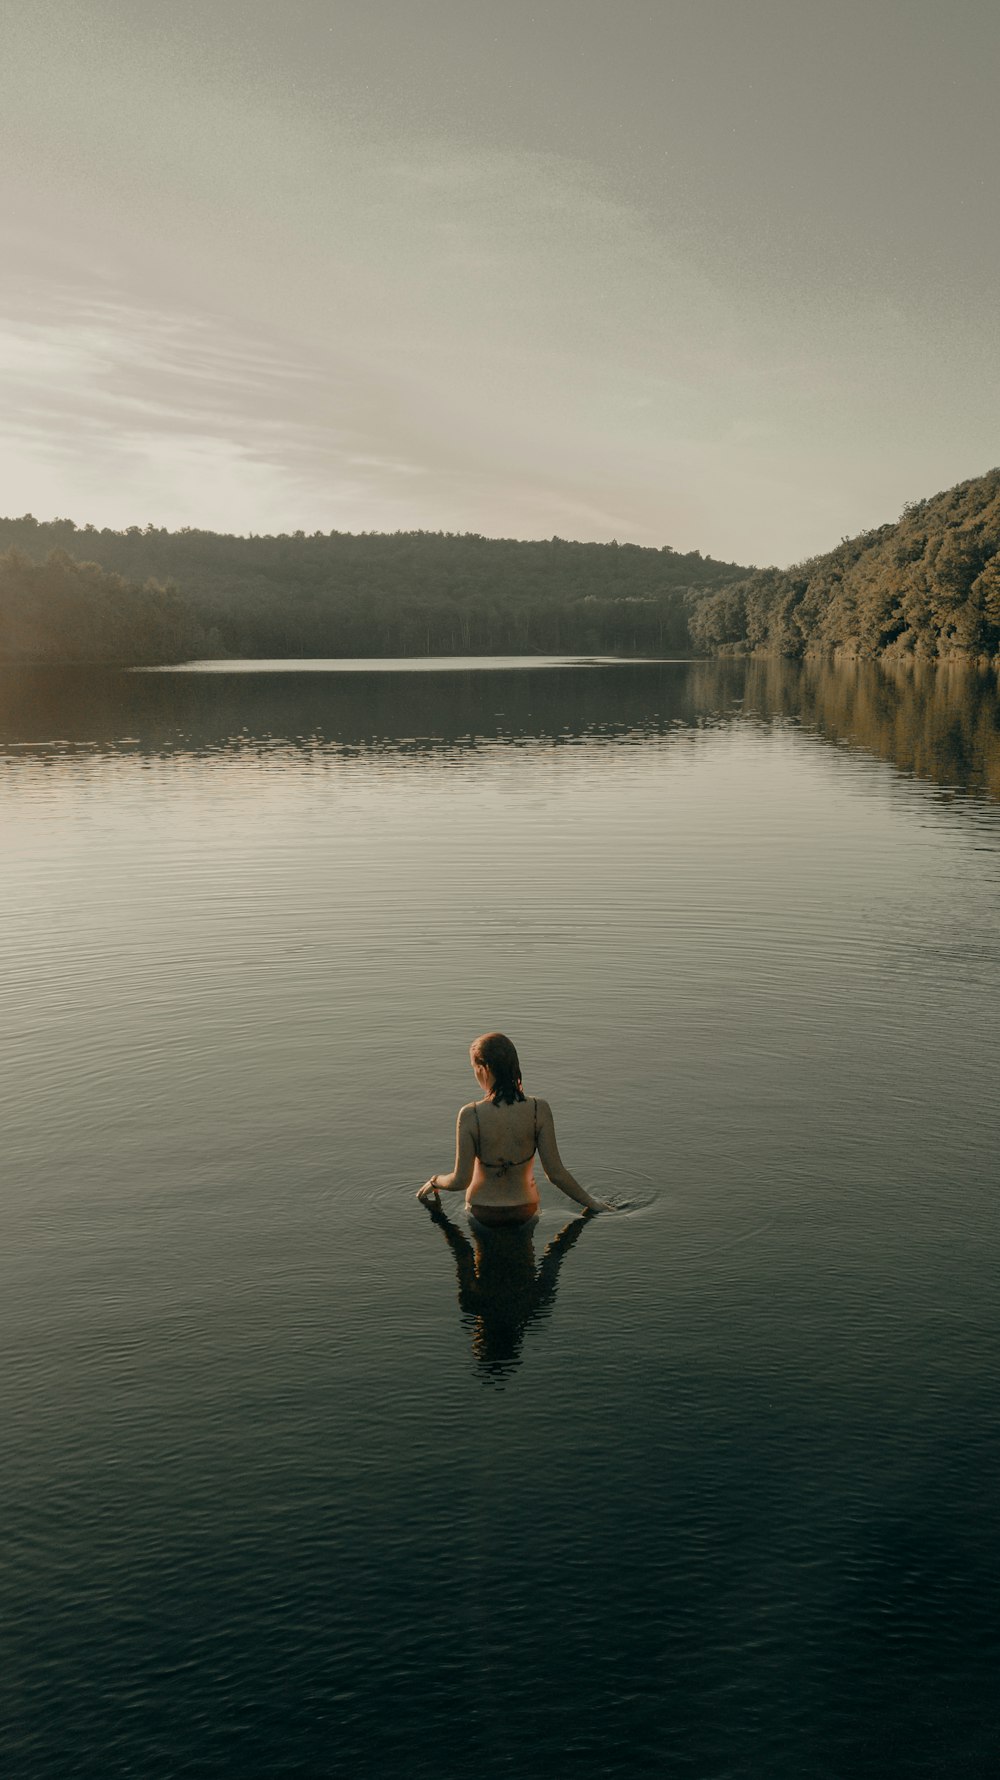 woman in black bikini sitting on rock near body of water during daytime